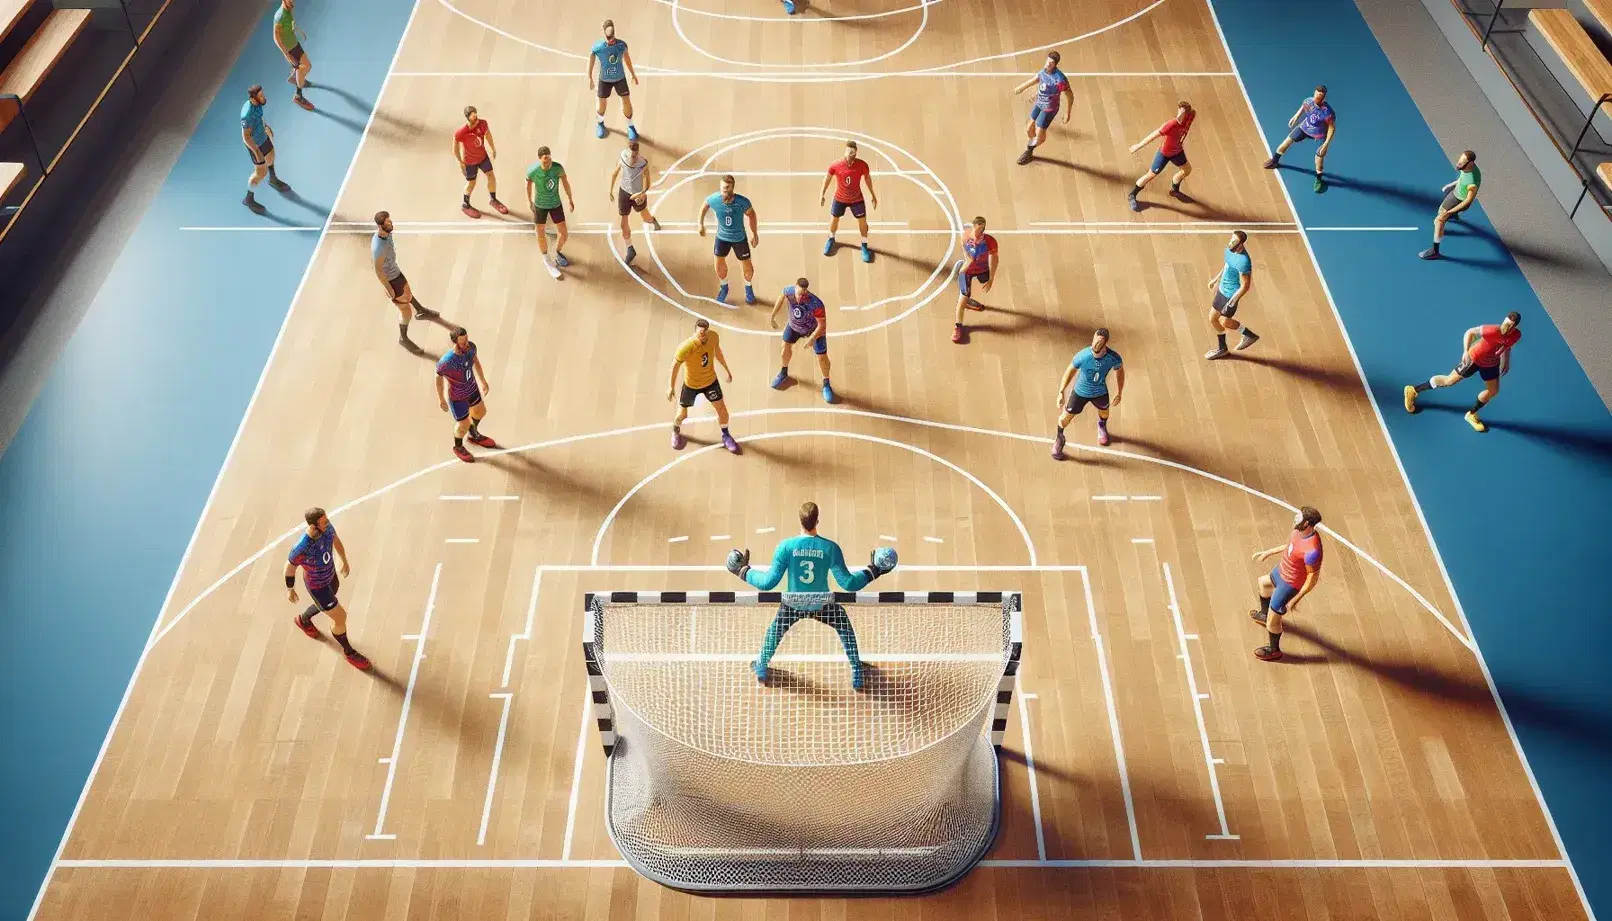 Cancha de balonmano con jugadores en acción, equipos en azul y rojo compiten mientras el portero defiende la portería.